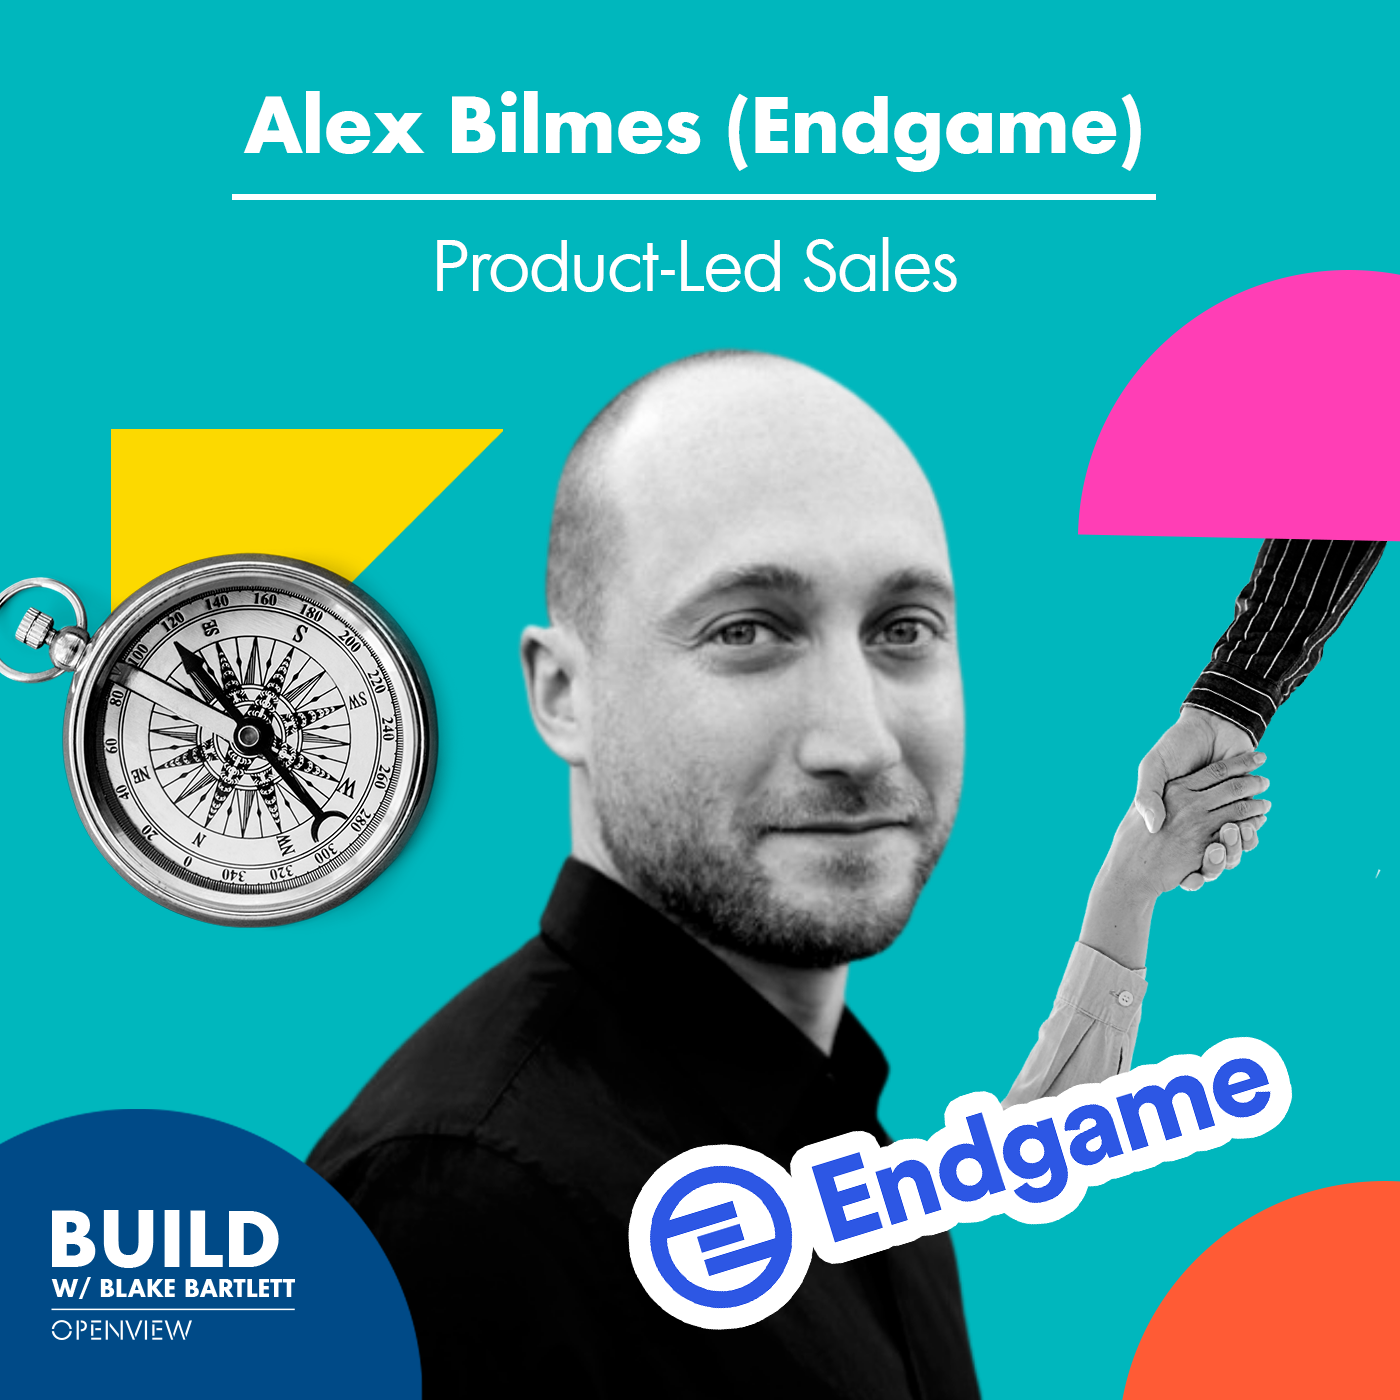 Alex Bilmes (Endgame): Product-Led Sales